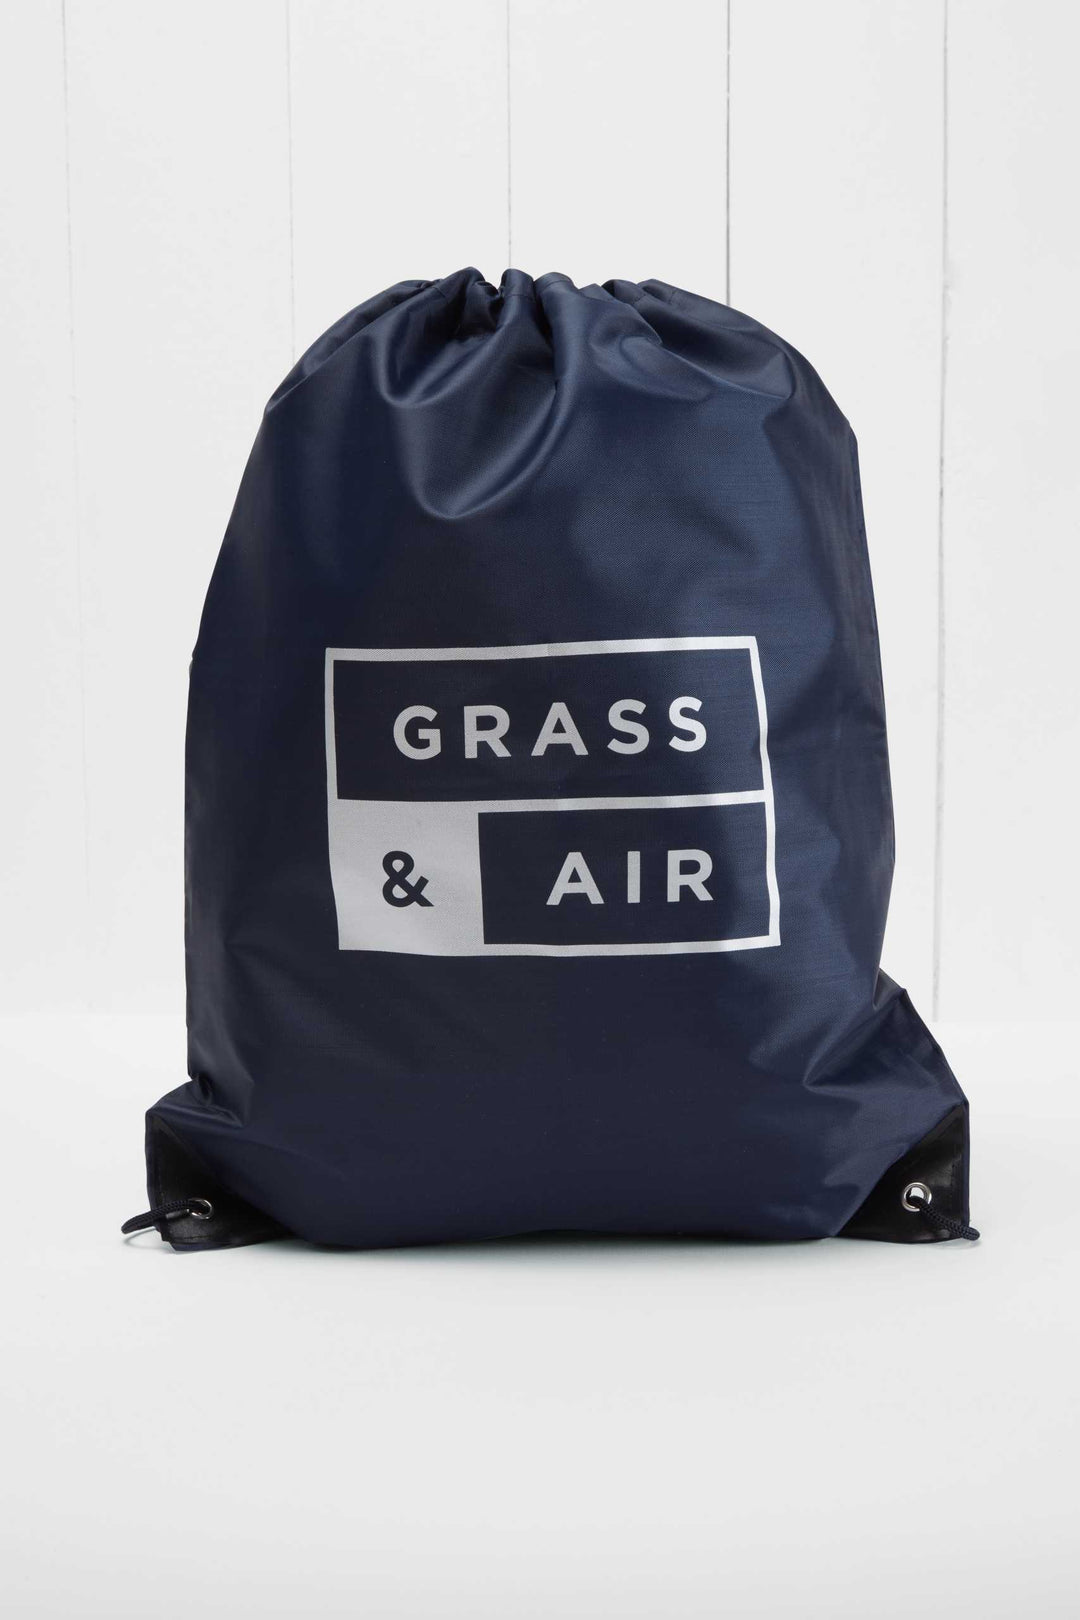 Grass & Air - Colour-Changing Cloud Wellies - Khaki